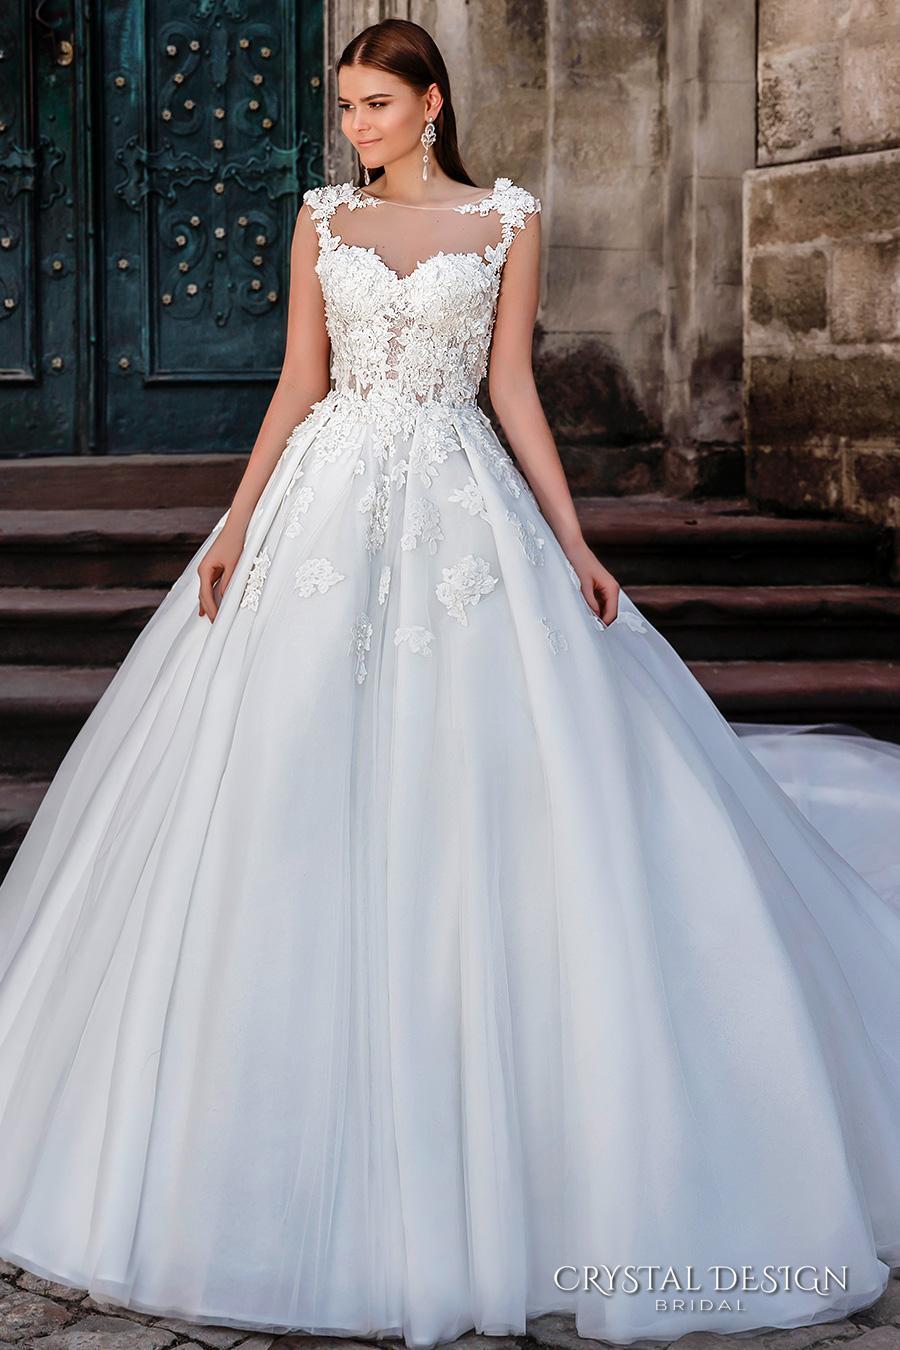 زفاف - Crystal Design 2016 Wedding Dresses Fairytale Ball Gowns for the Modern Day Princess Online with $109.3/Piece on Hjklp88's Store 